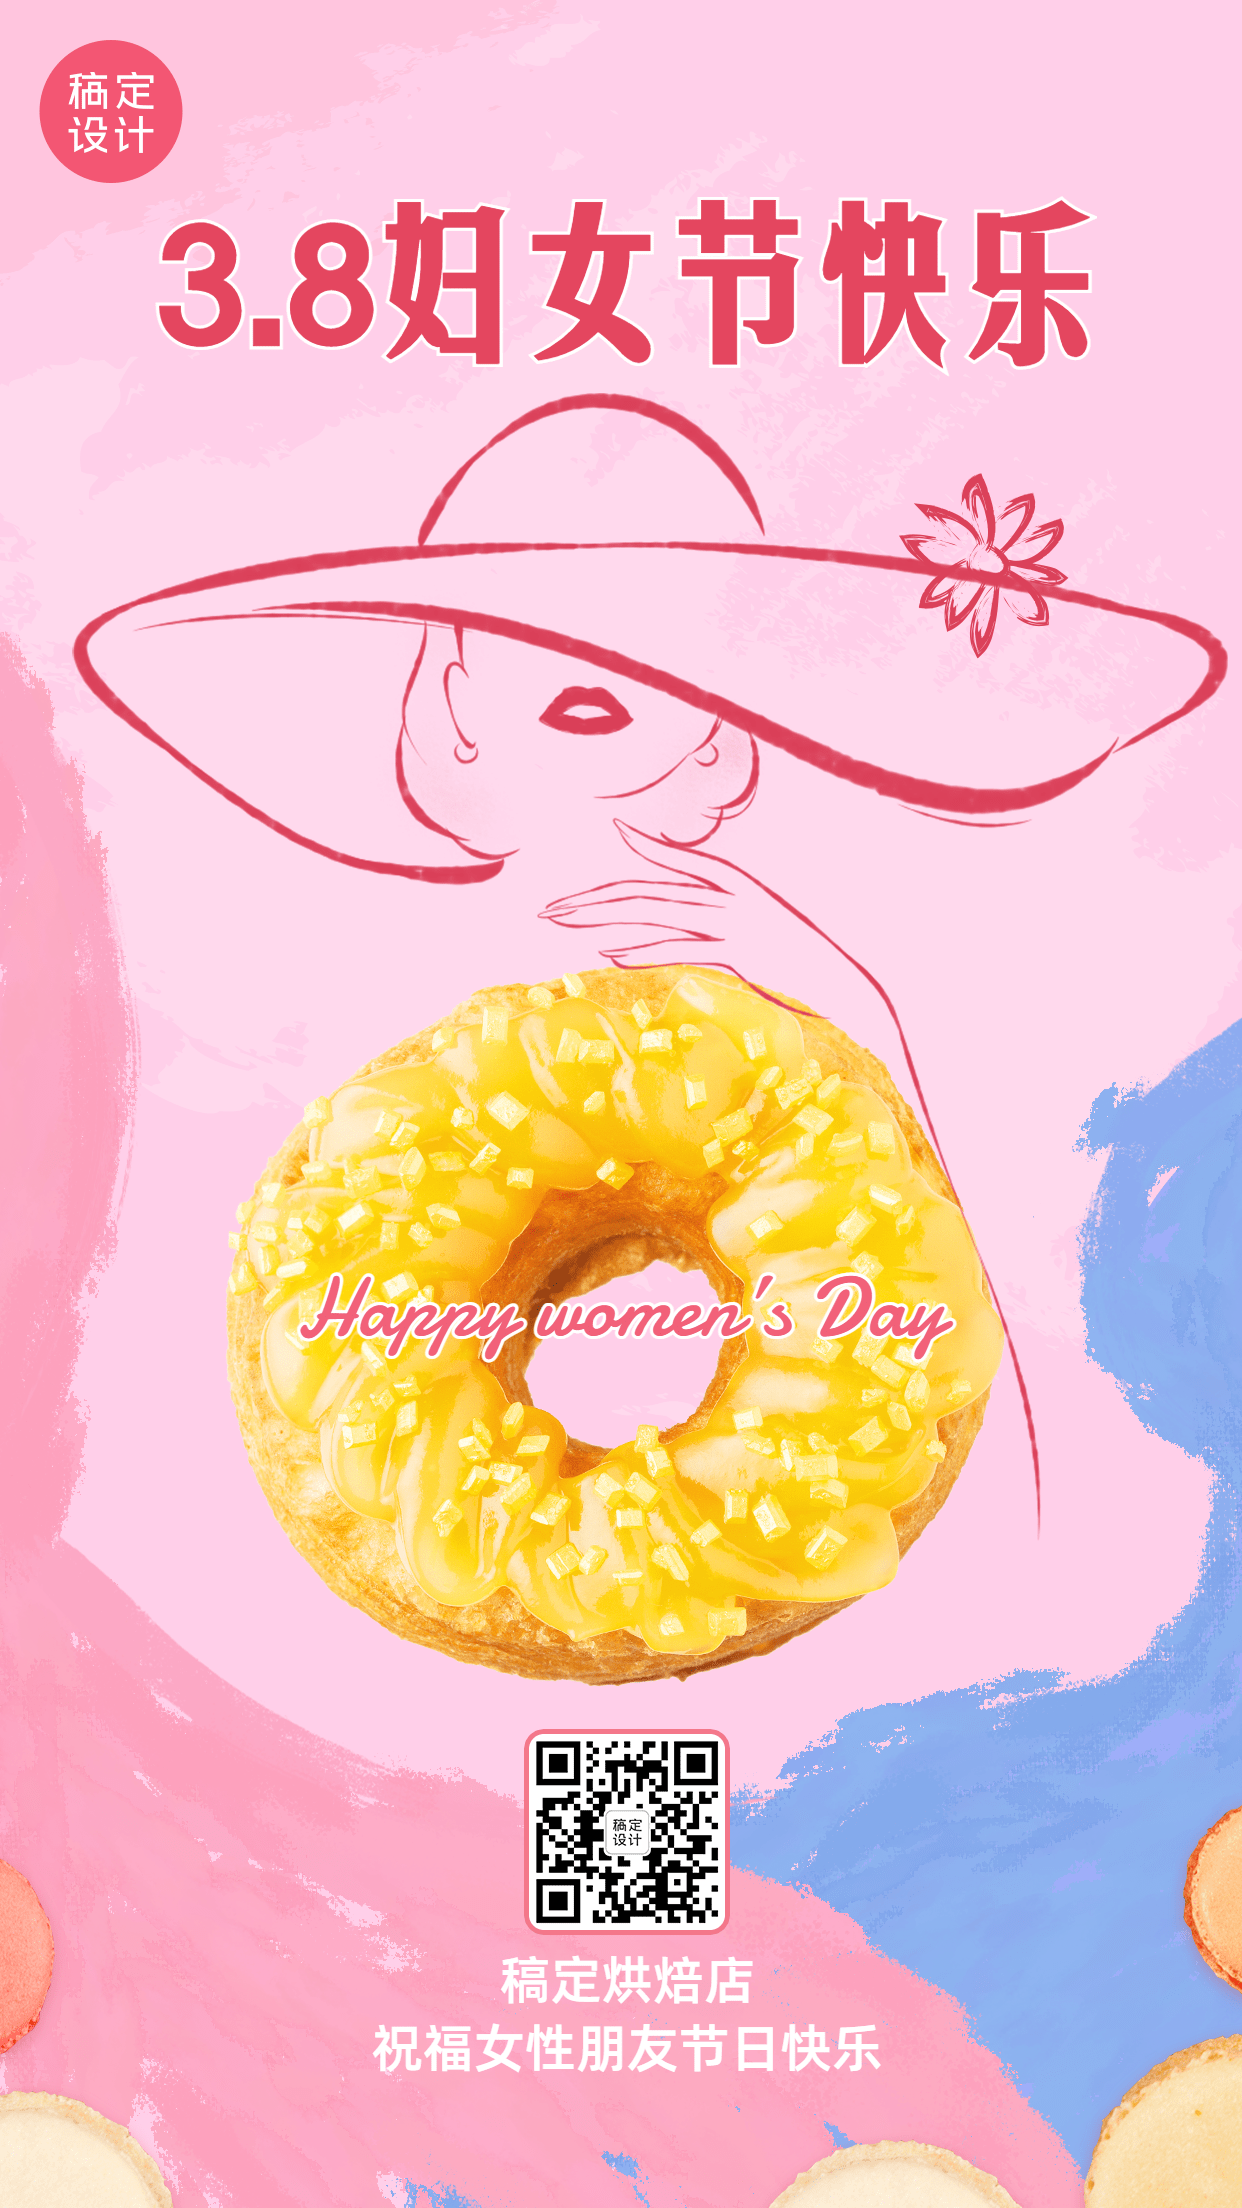 妇女节节日祝福甜品烘焙餐饮手机海报预览效果